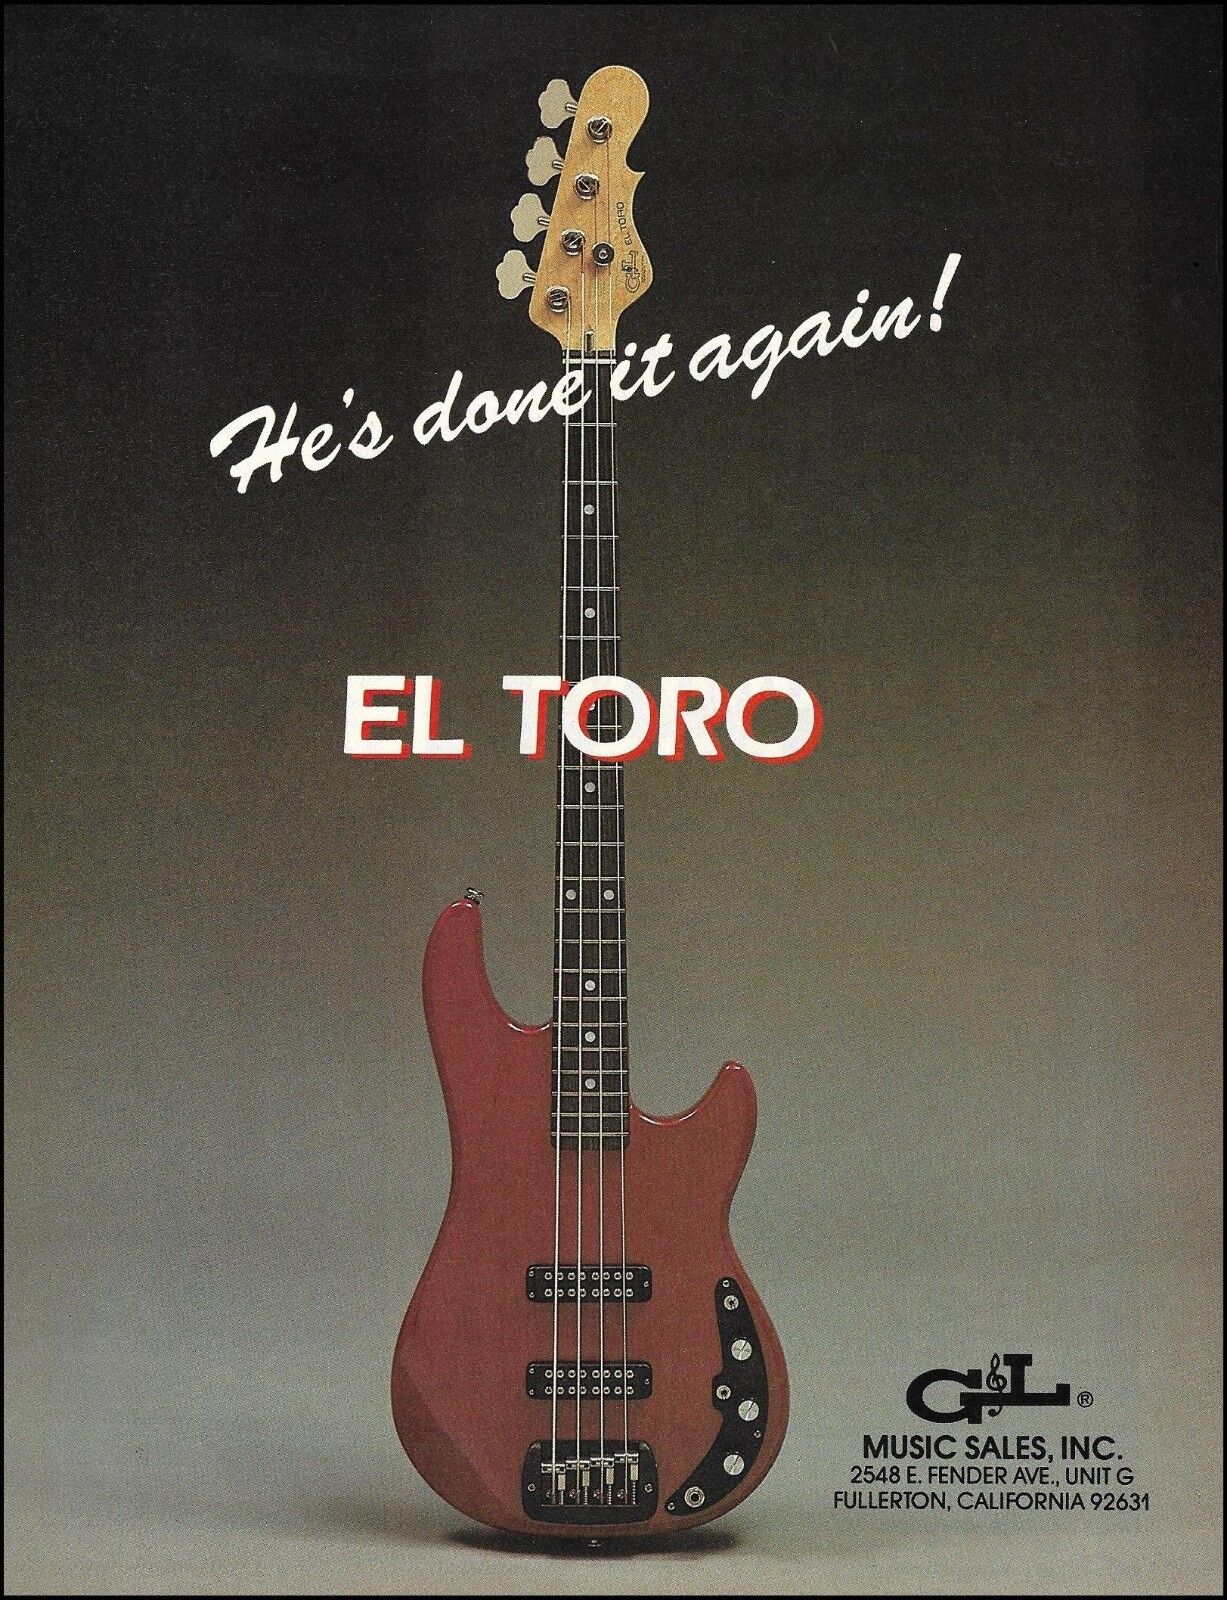 G&L El Toro Series Bass Guitar original 1983 ad 8 x 11 advertisement print